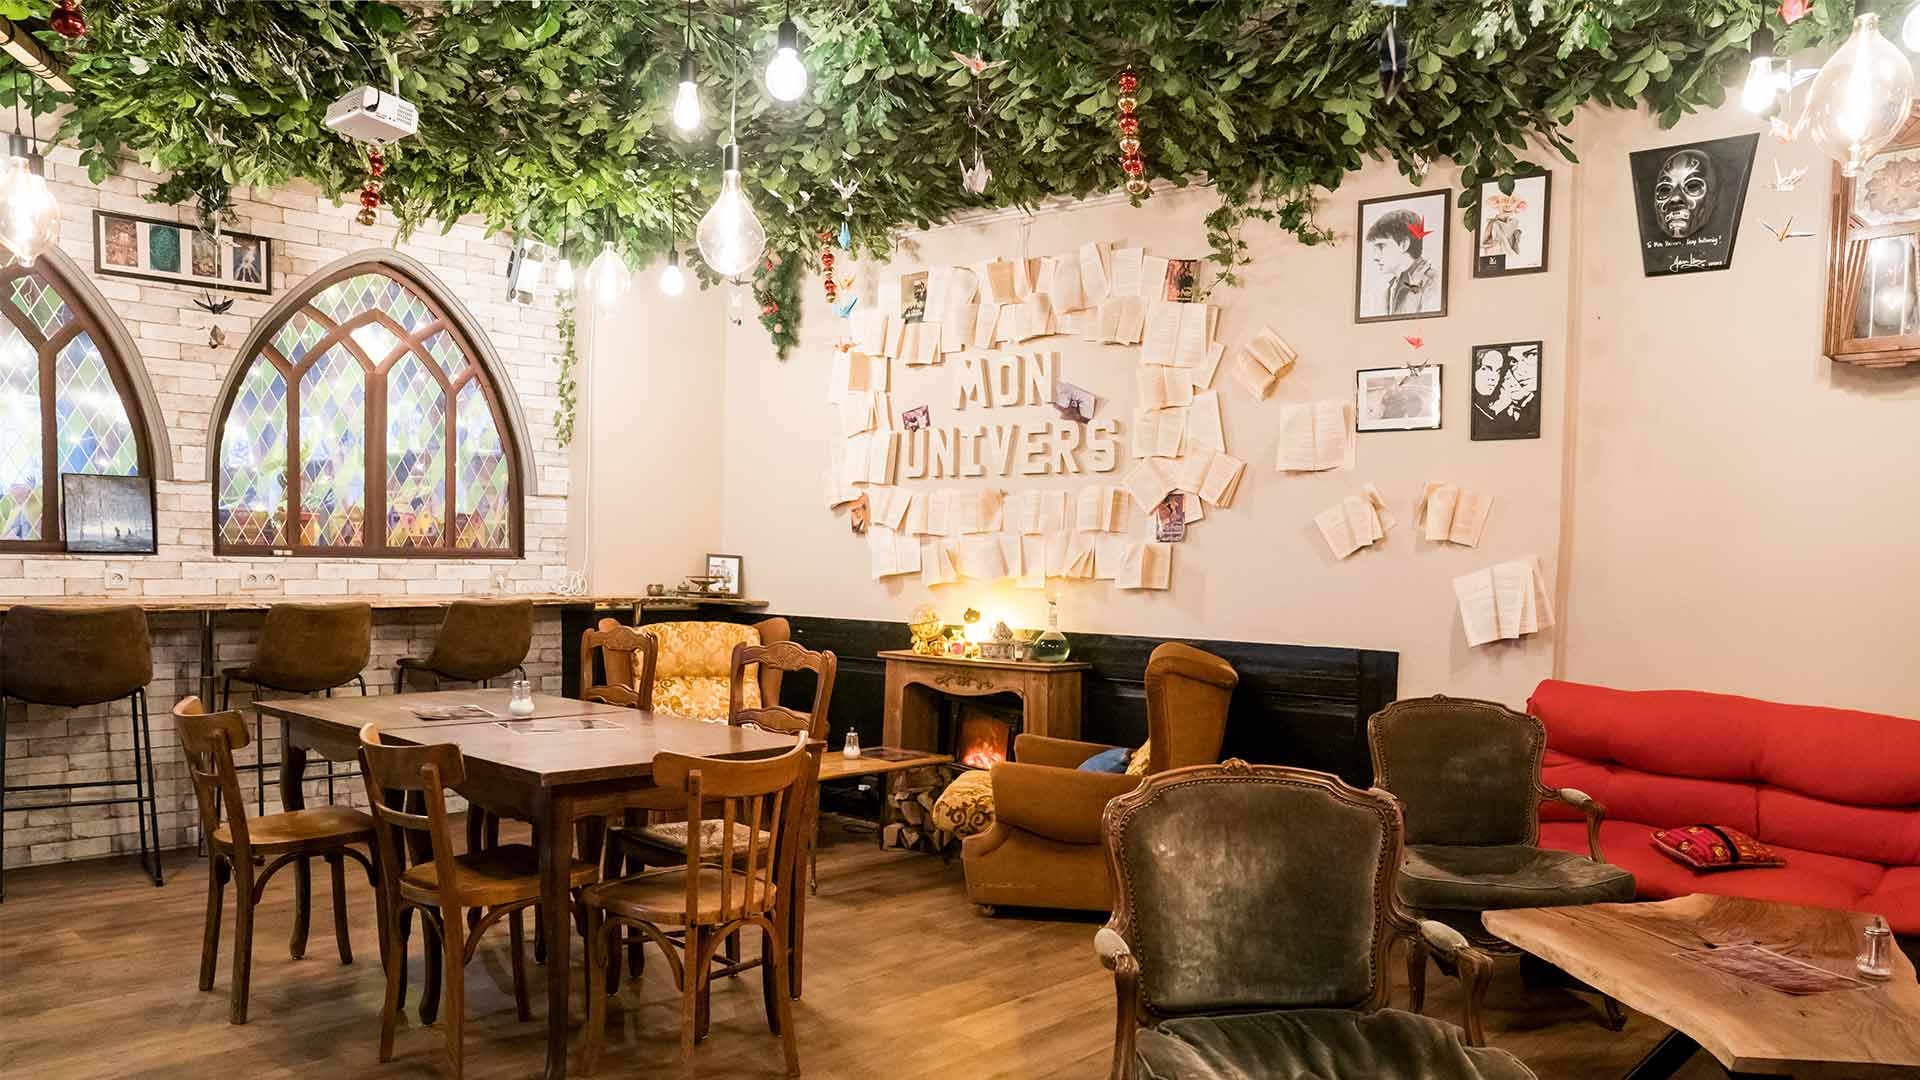 Concept store "Harry Potter" à Mulhouse - Espace salon de thé 